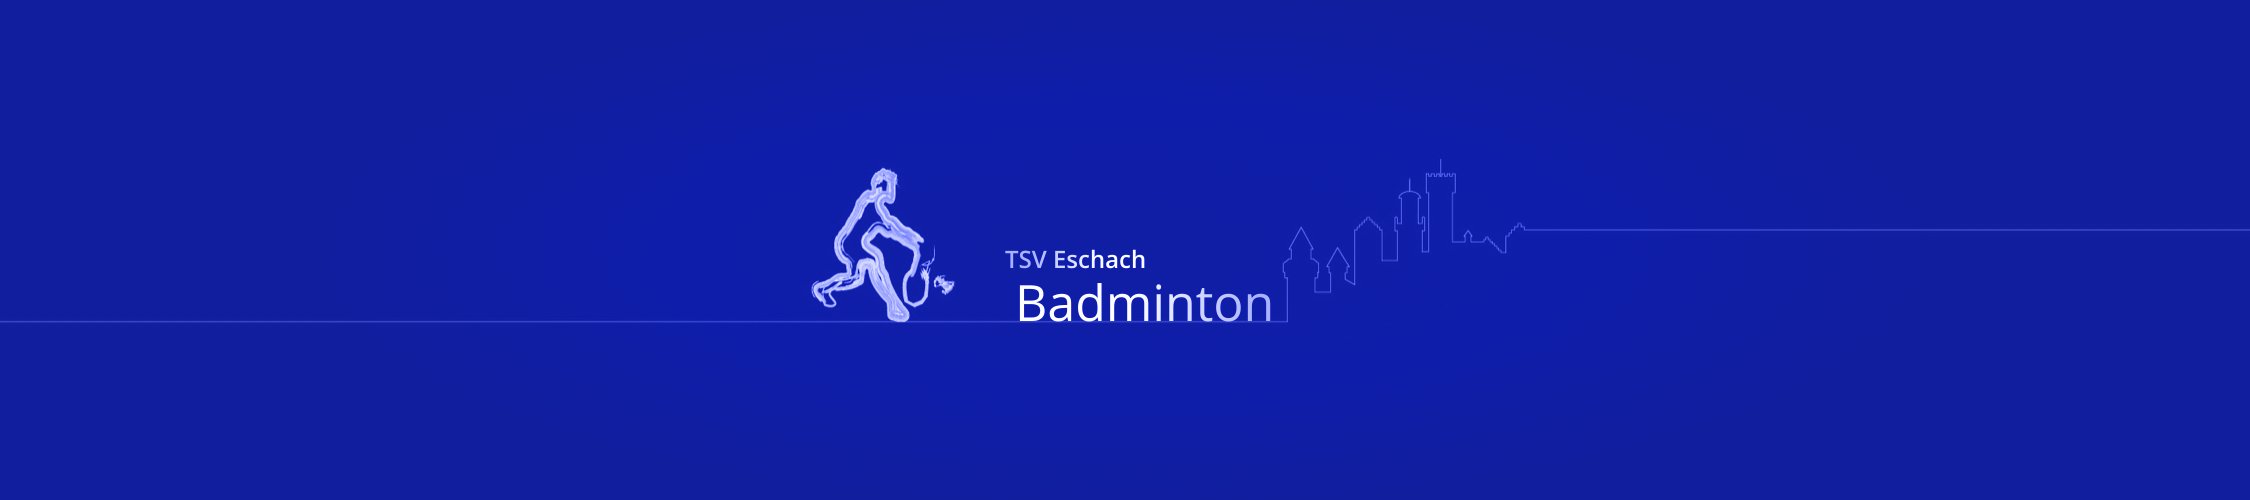 TSV-Eschach Badminton